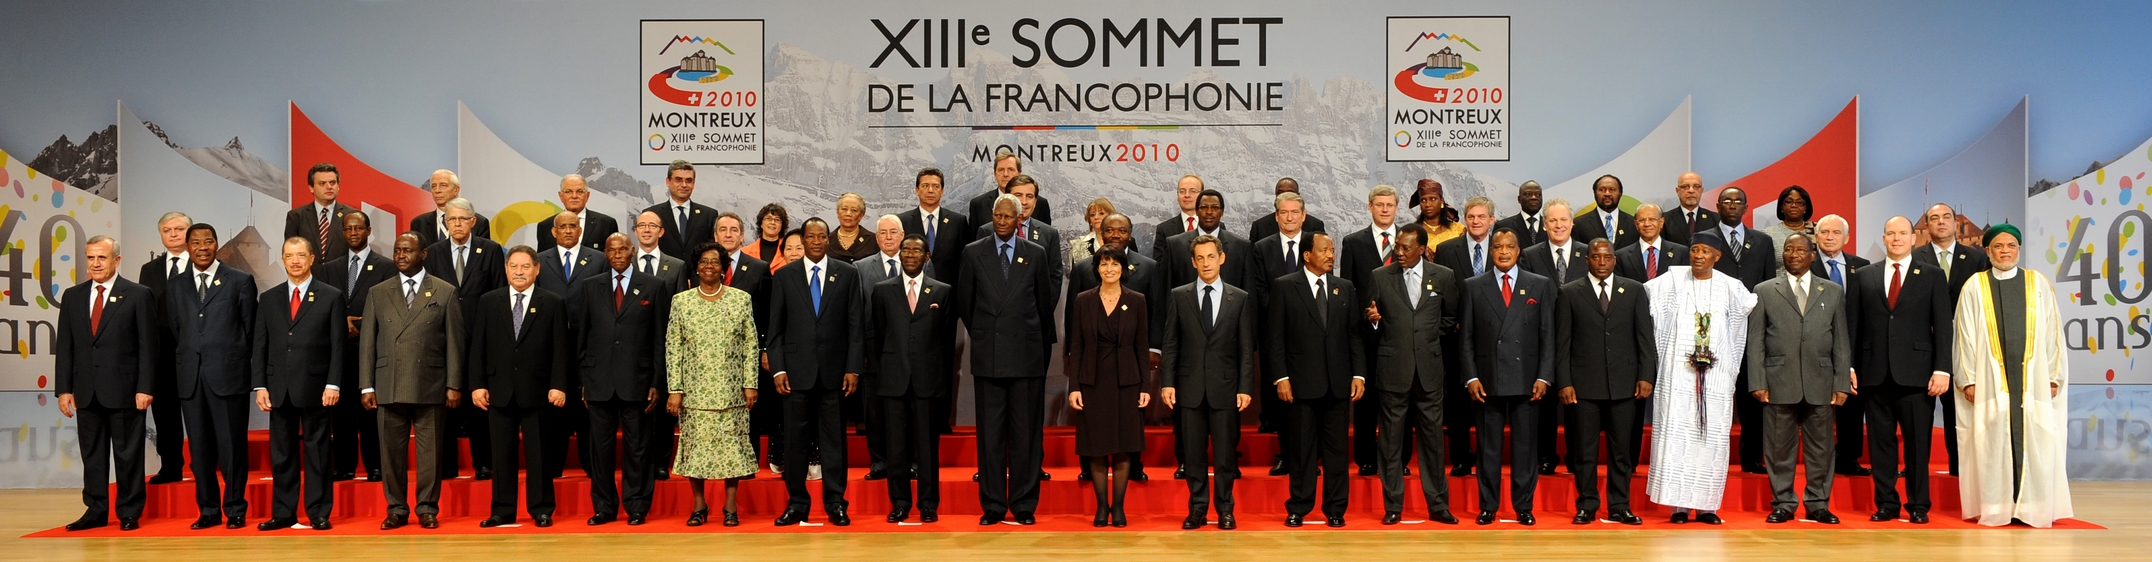 Photo de famille: XIIIe (13e) Sommet de la Francophonie à Montreux (Suisse), 23-24 Octobre 2010